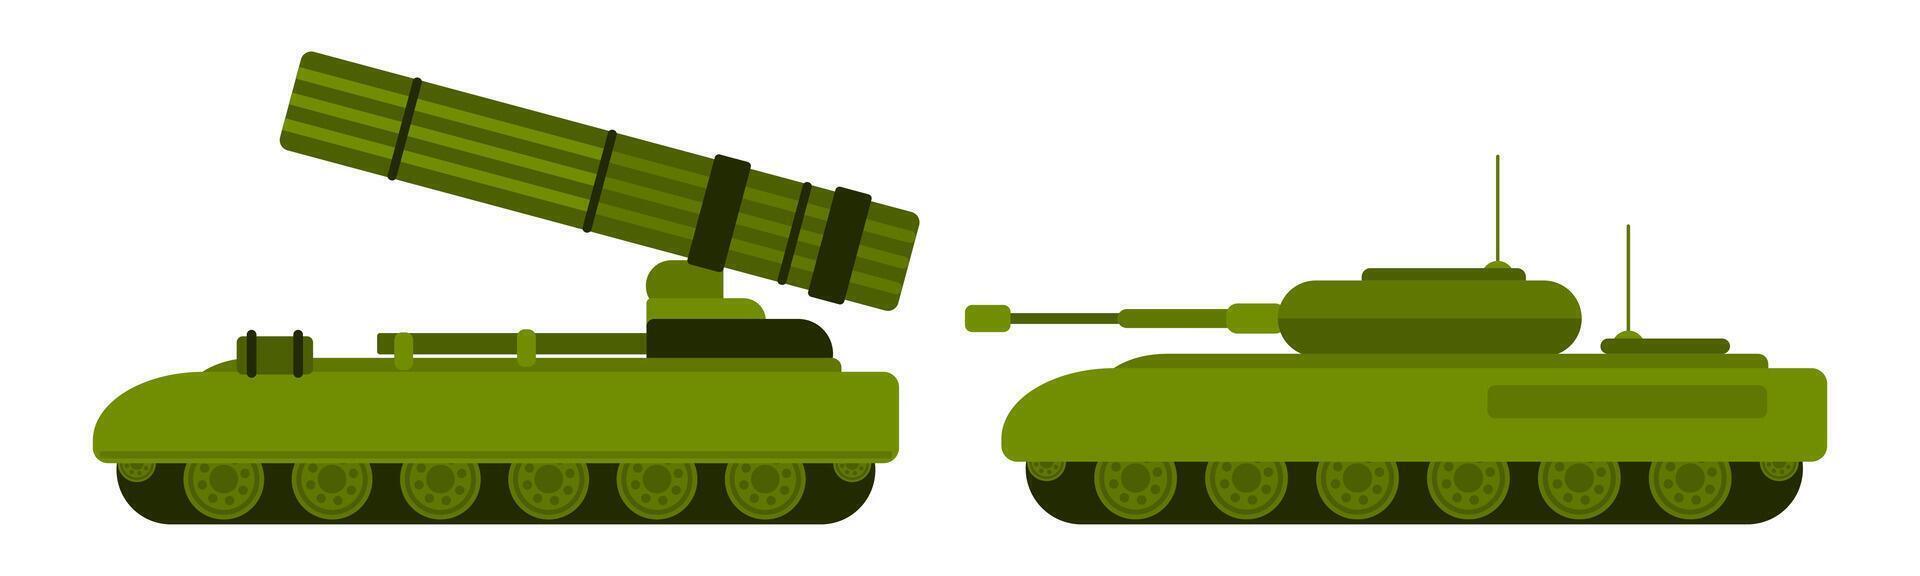 rastreado militar equipo tanque y artillería nuevo vector